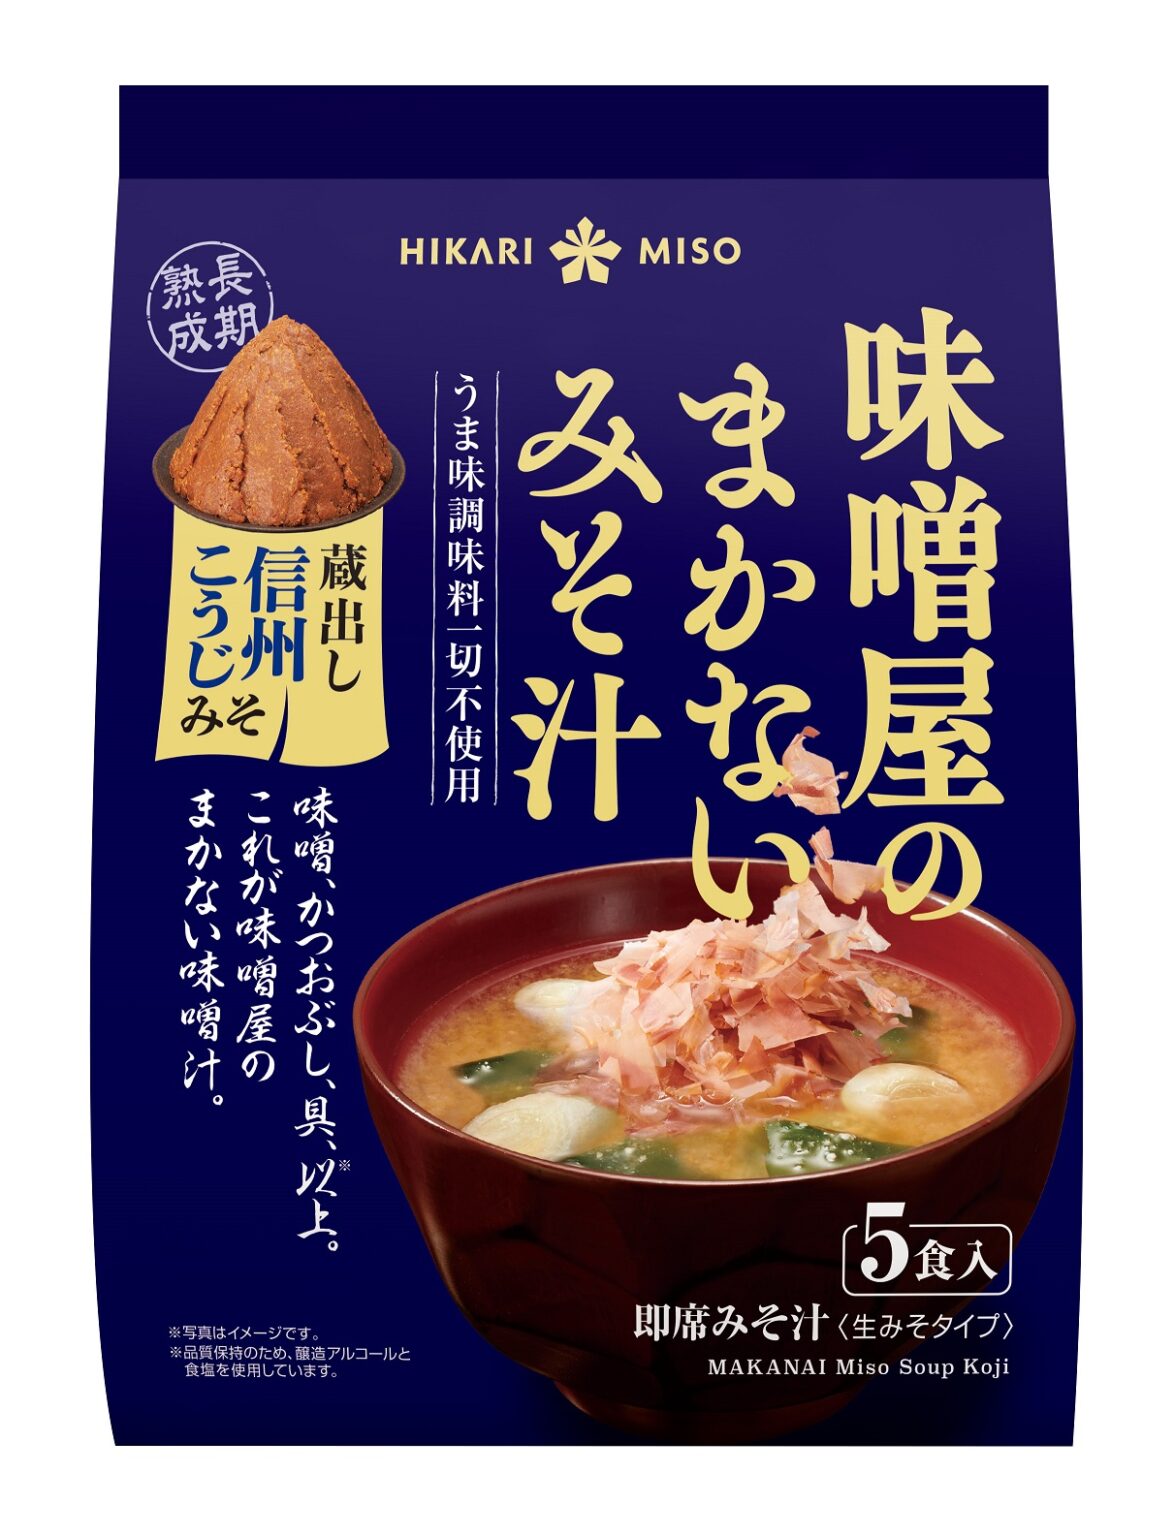 “Misoya no Makanai Miso Soup -Kuradashi Shinshu Koji Miso-” is now ...